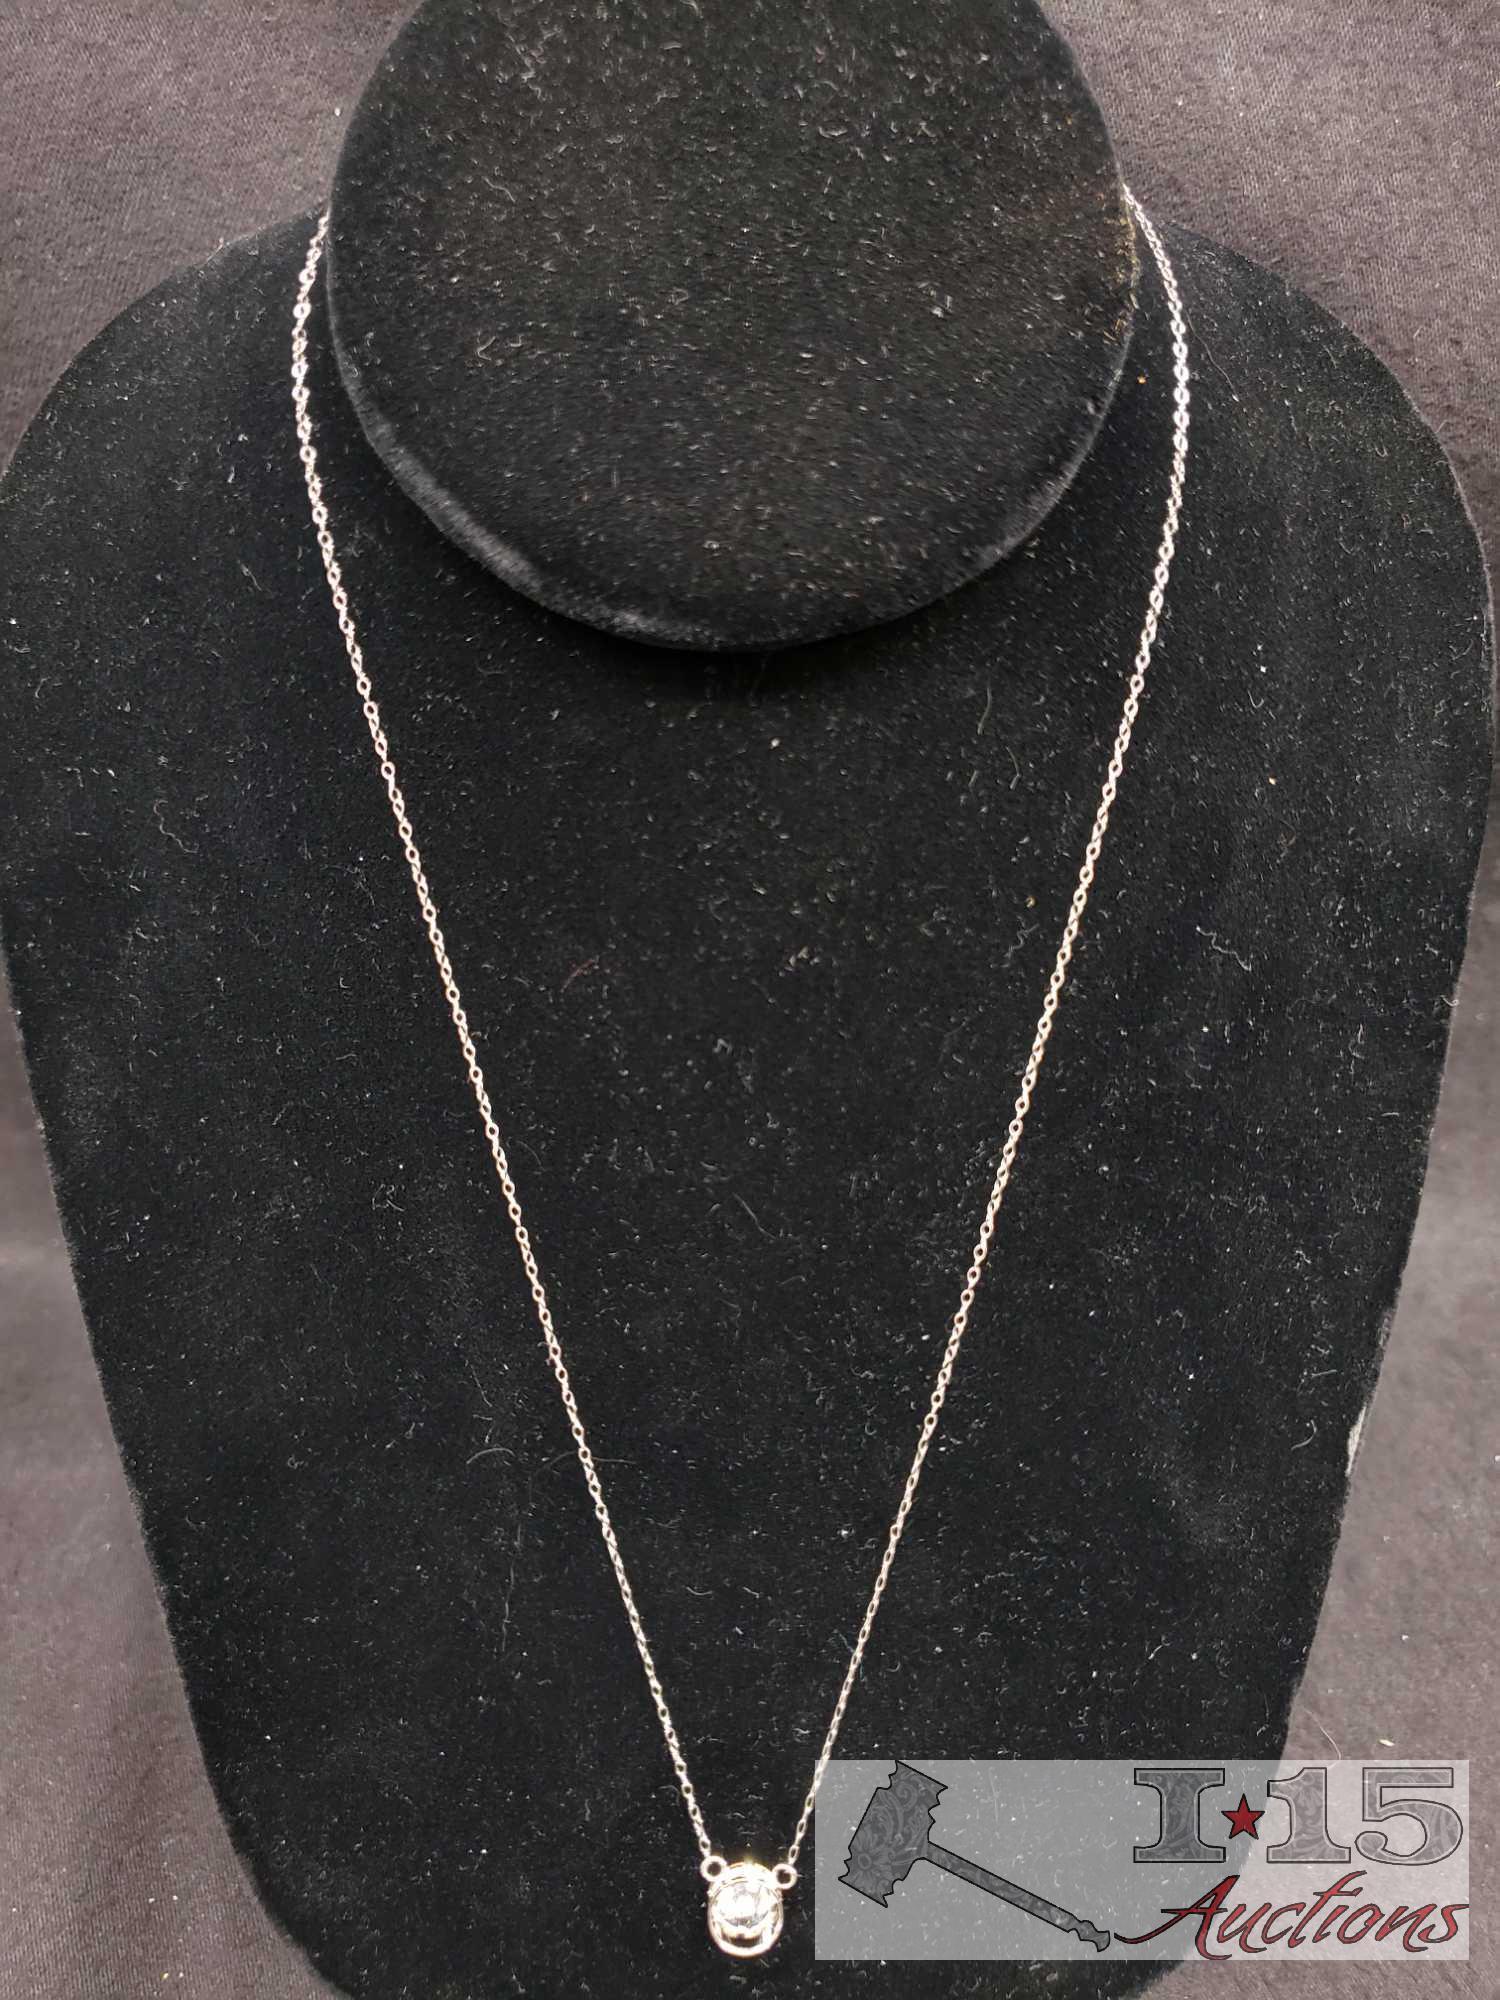 2 10k necklaces 18" long with CZ pendants.